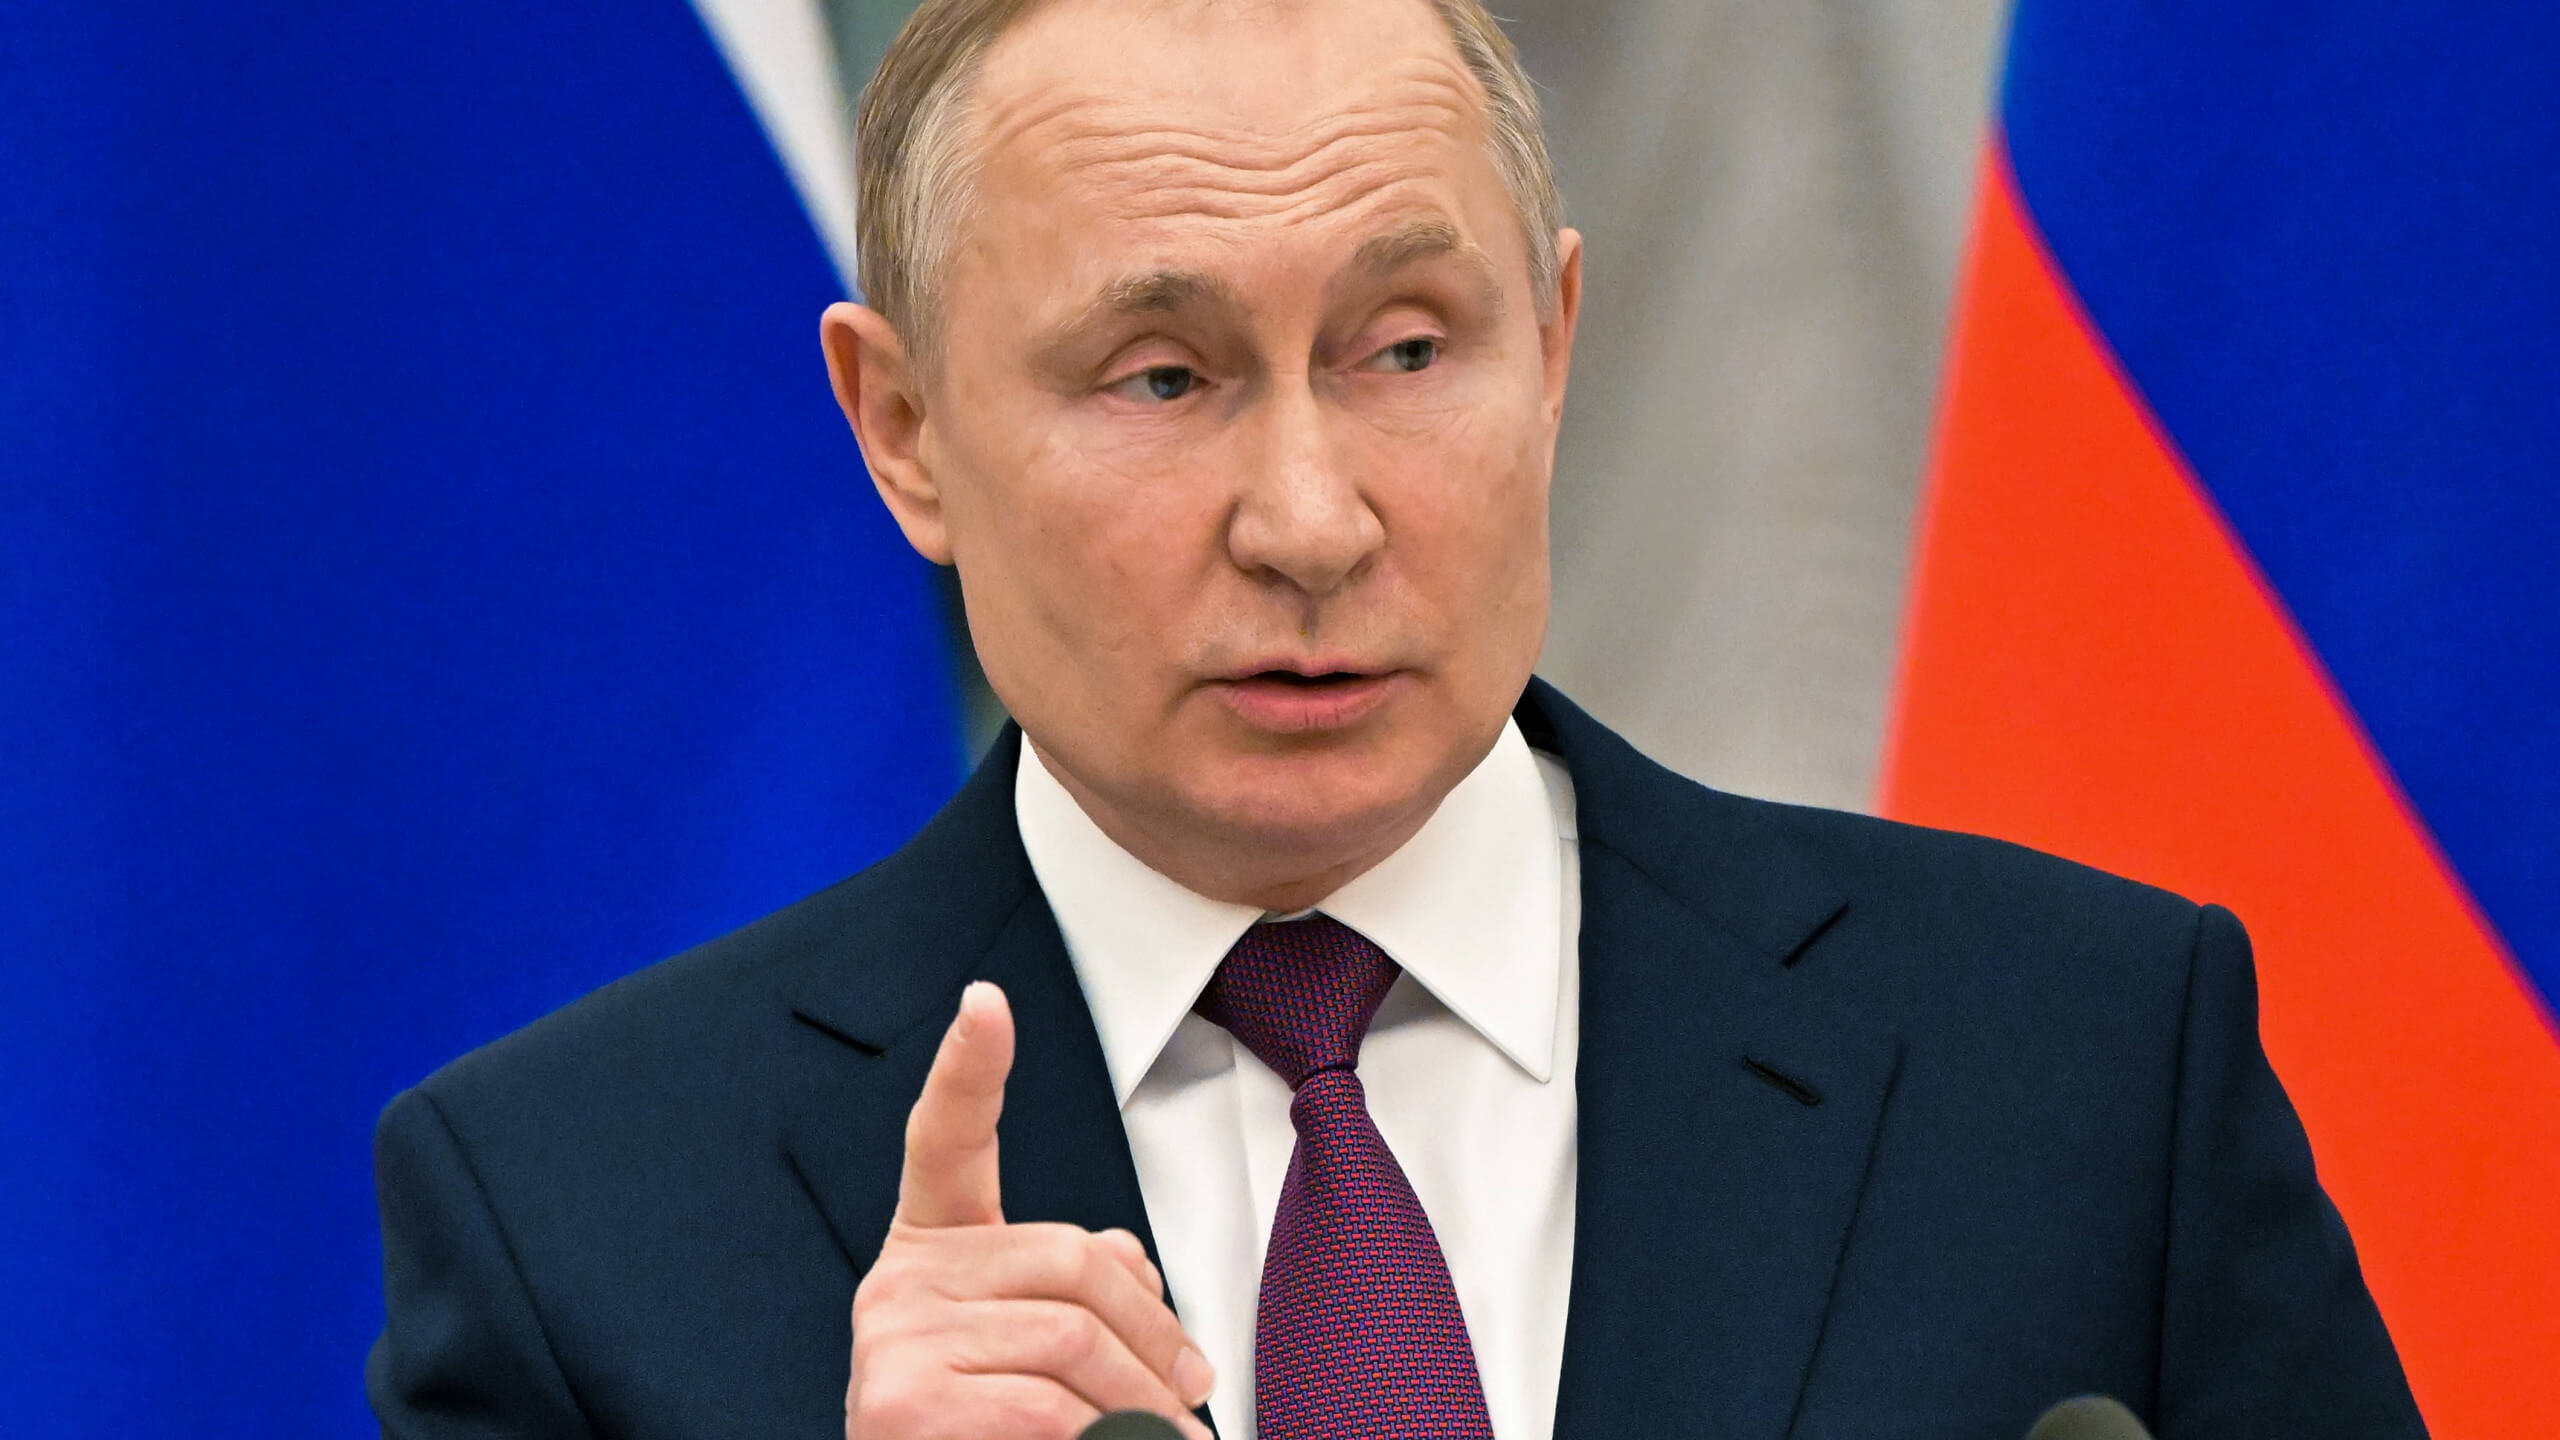 Präsident Wladimir Putin in Russland spricht zum Ukraine-Konflikt